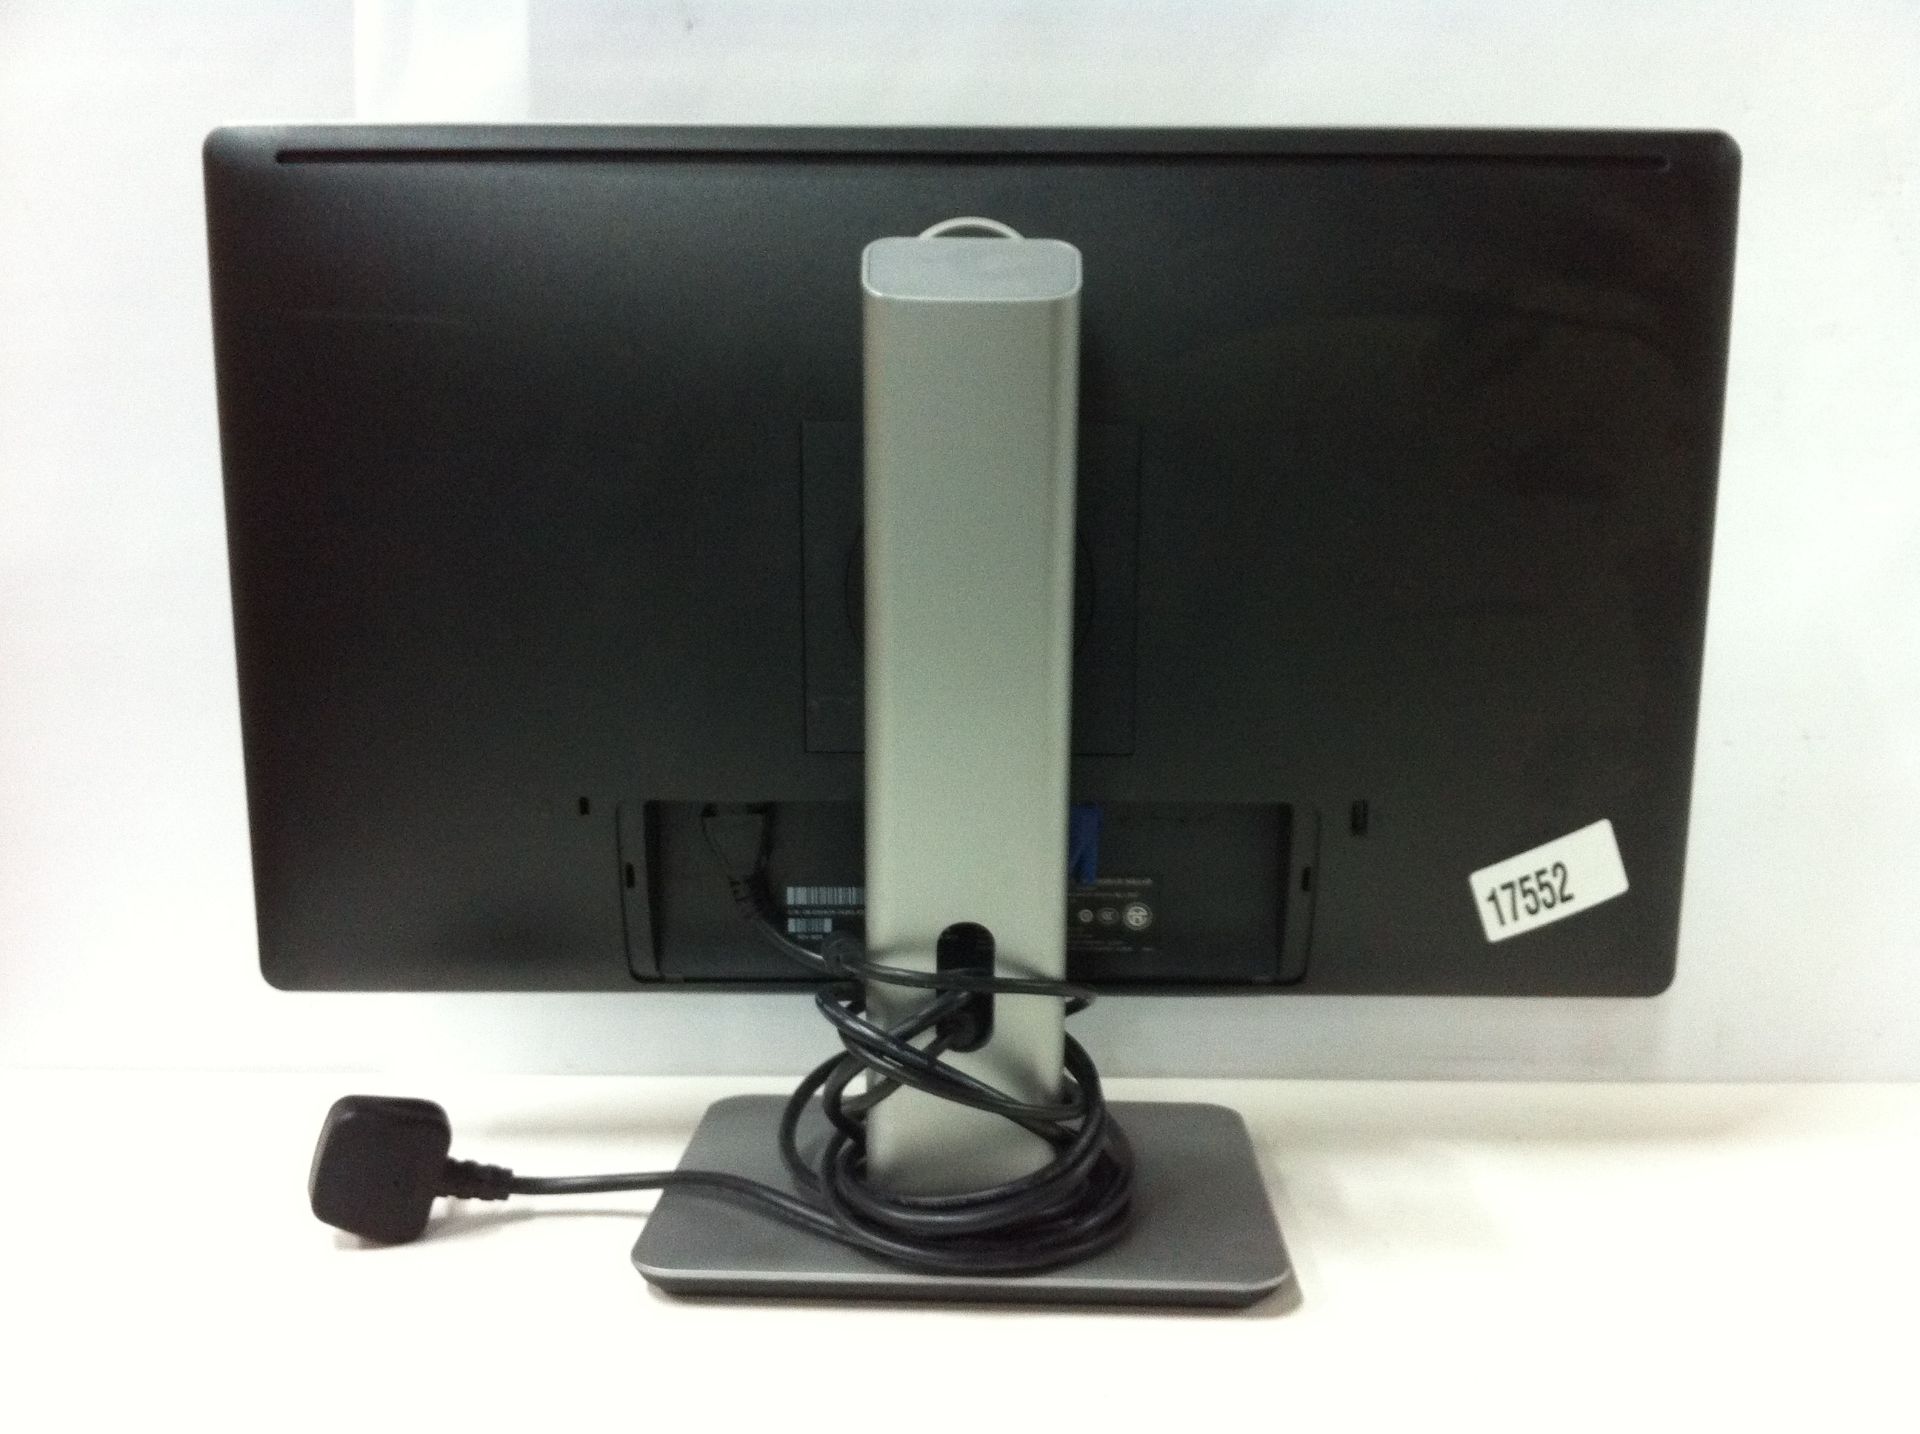 5 x Dell PC Monitors. See description. - Image 2 of 3